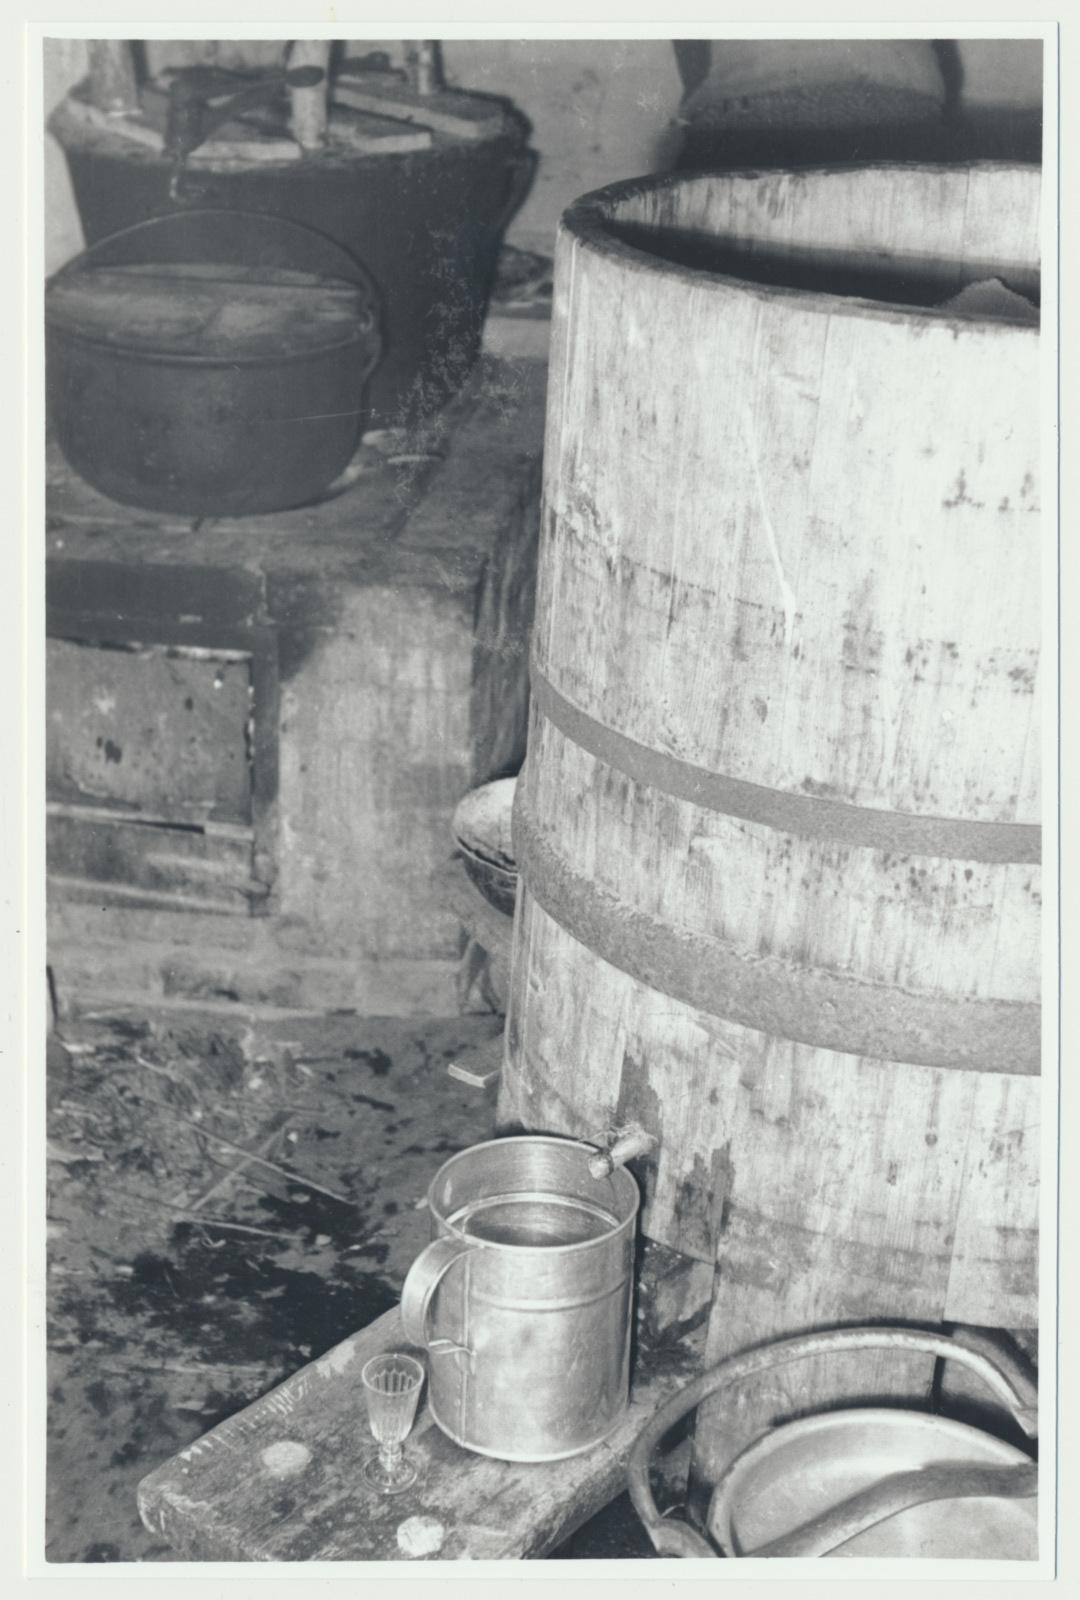 foto, Raplamaa, alkoholi destilleerimine (puskari tegemine), 1959, foto L. Kadalipp